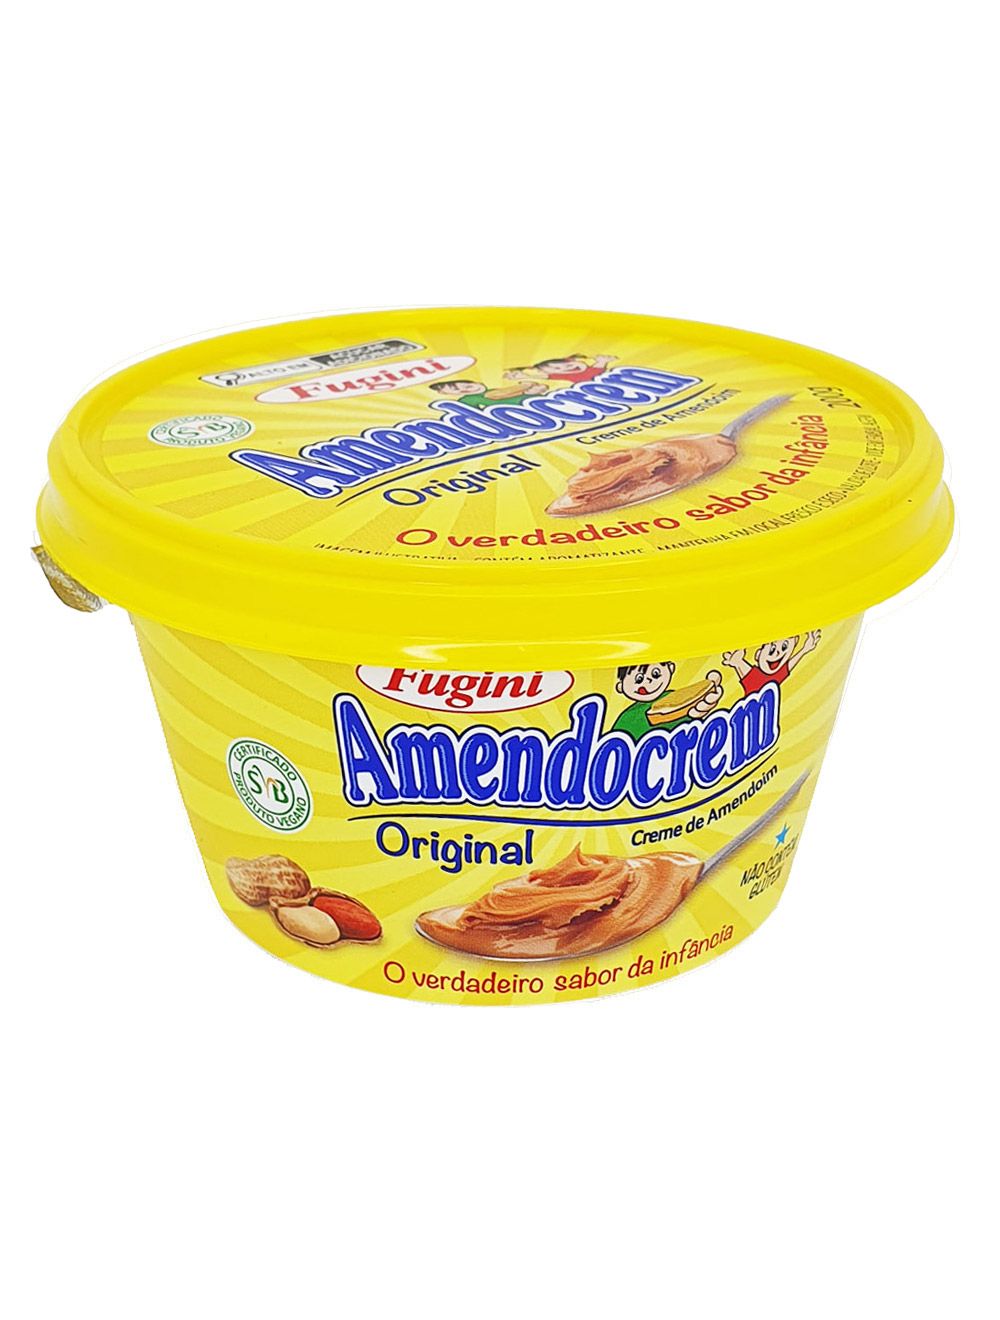 Doce Malu - O sabor clássico da pasta de amendoim americana sem